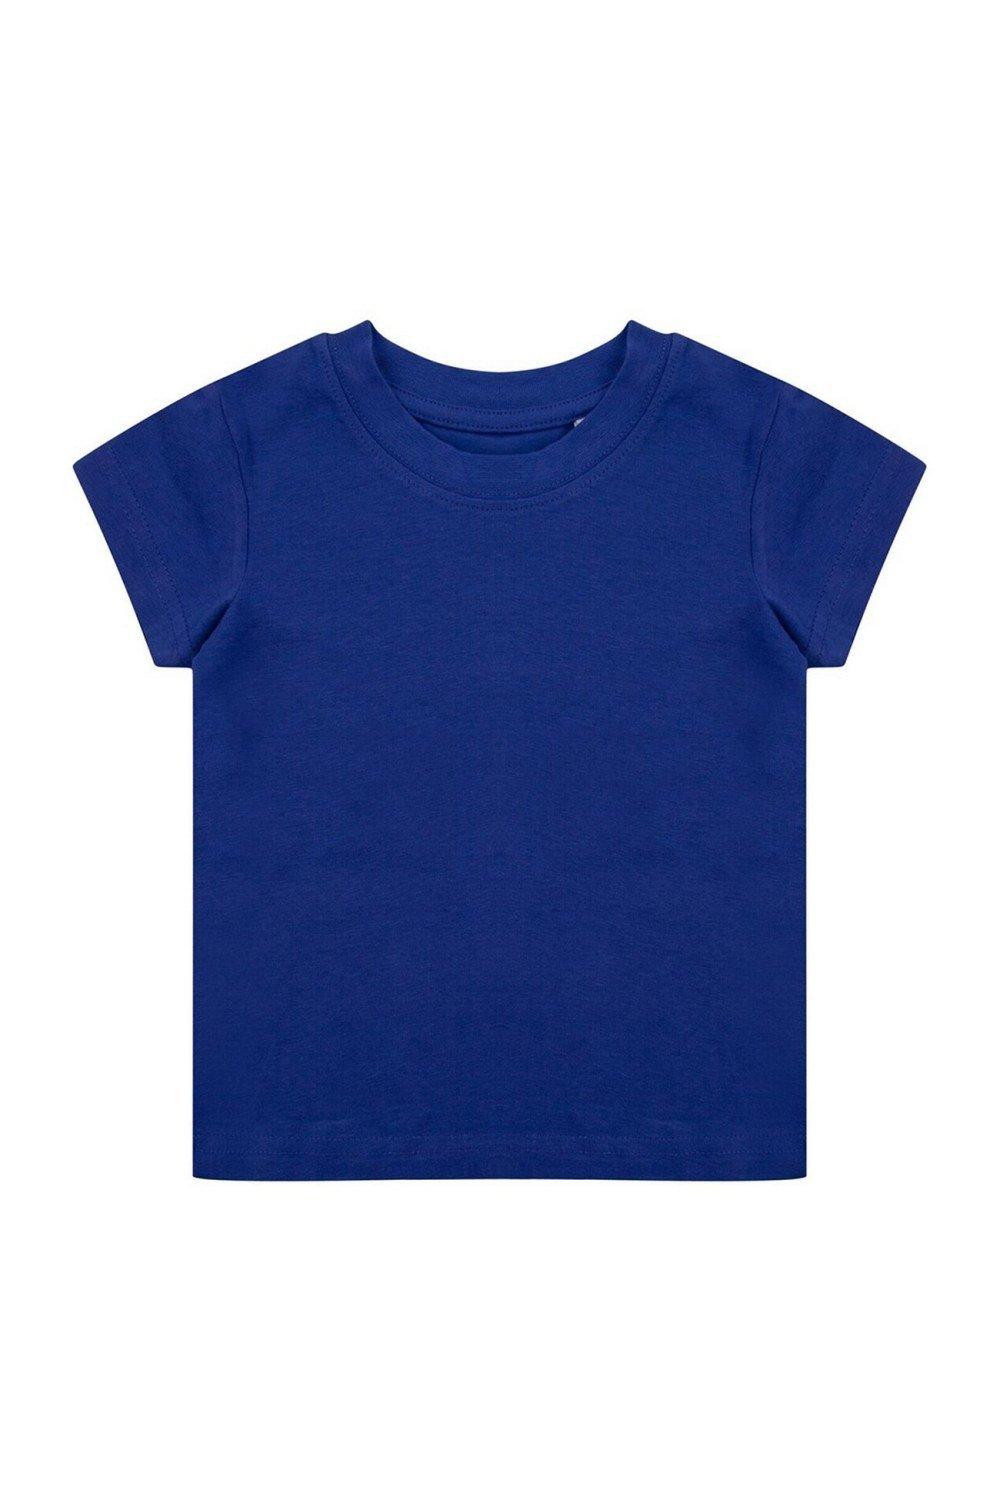 Органическая футболка Larkwood, синий органическая футболка larkwood белый